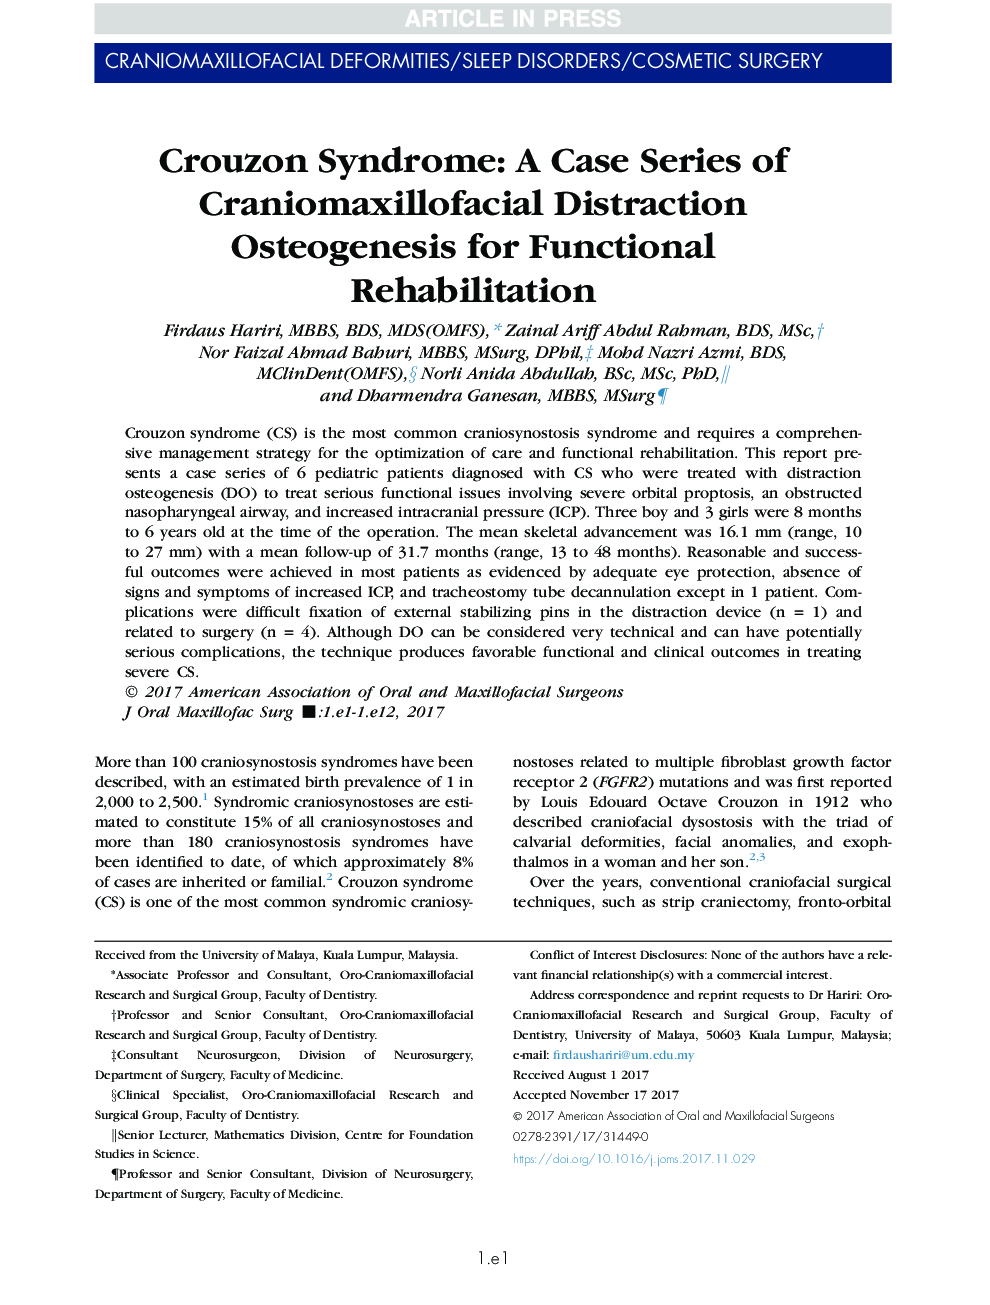 سندرم کروزون: یک سری مورد از استئوژنز اختصاصی کرانایوماکسیل فاسیال برای توانبخشی عملکردی 